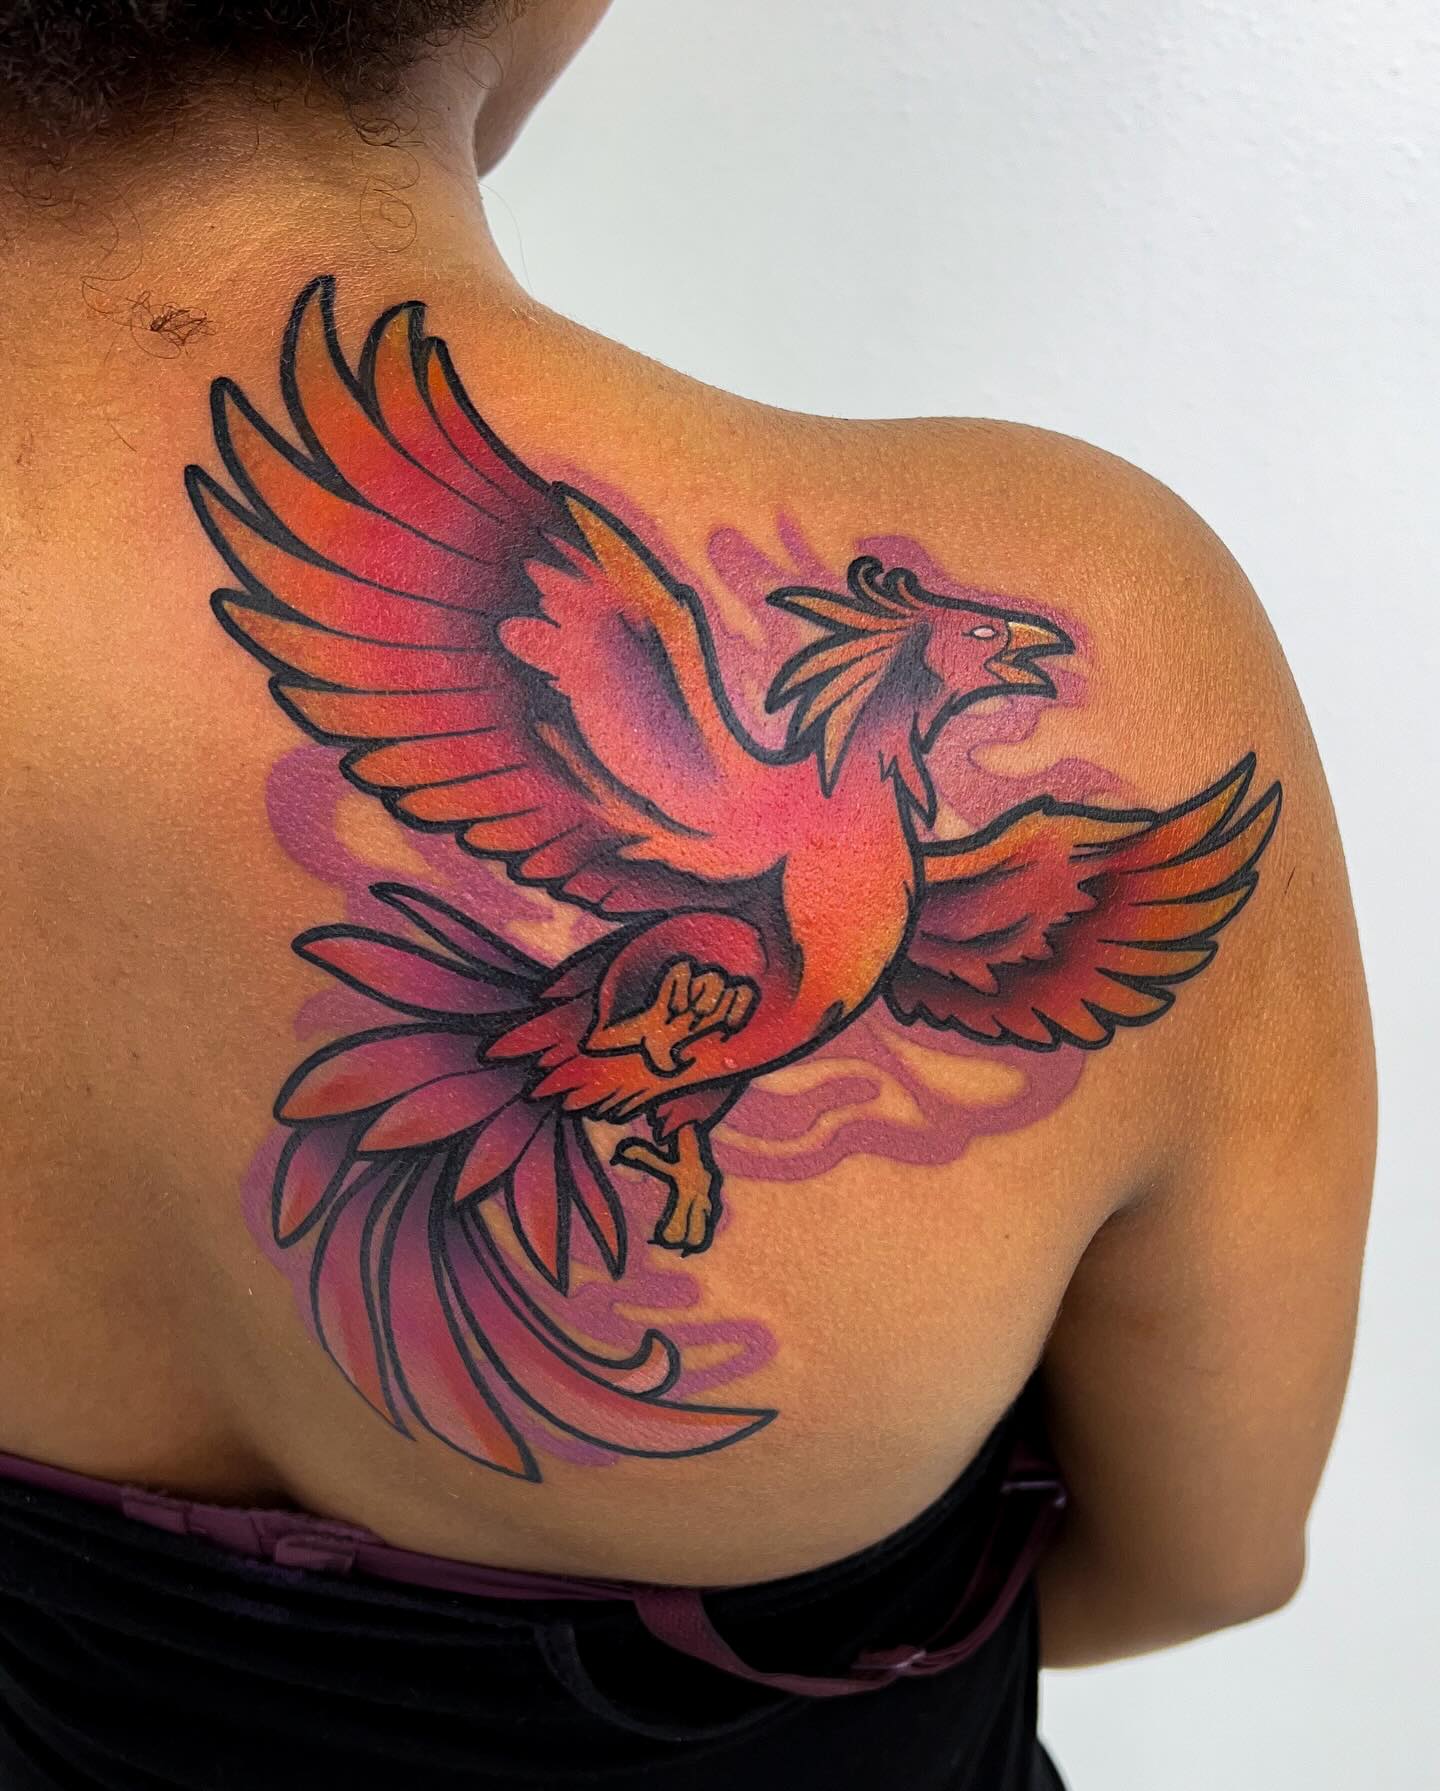 Rad Phoenix Tattoo